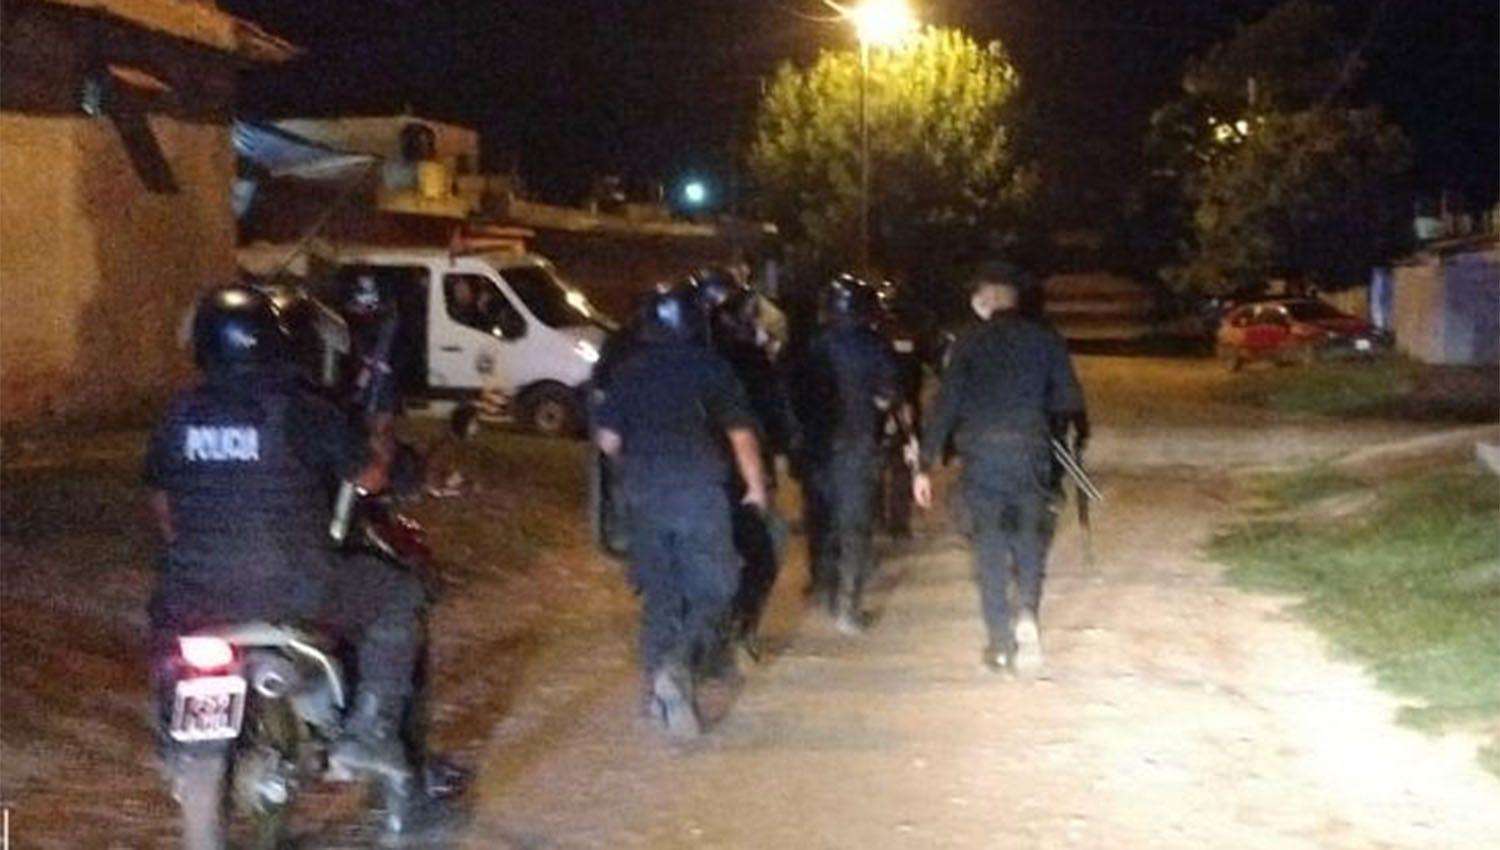 Casi una decena de arrestados en operativo saturacioacuten en Friacuteas